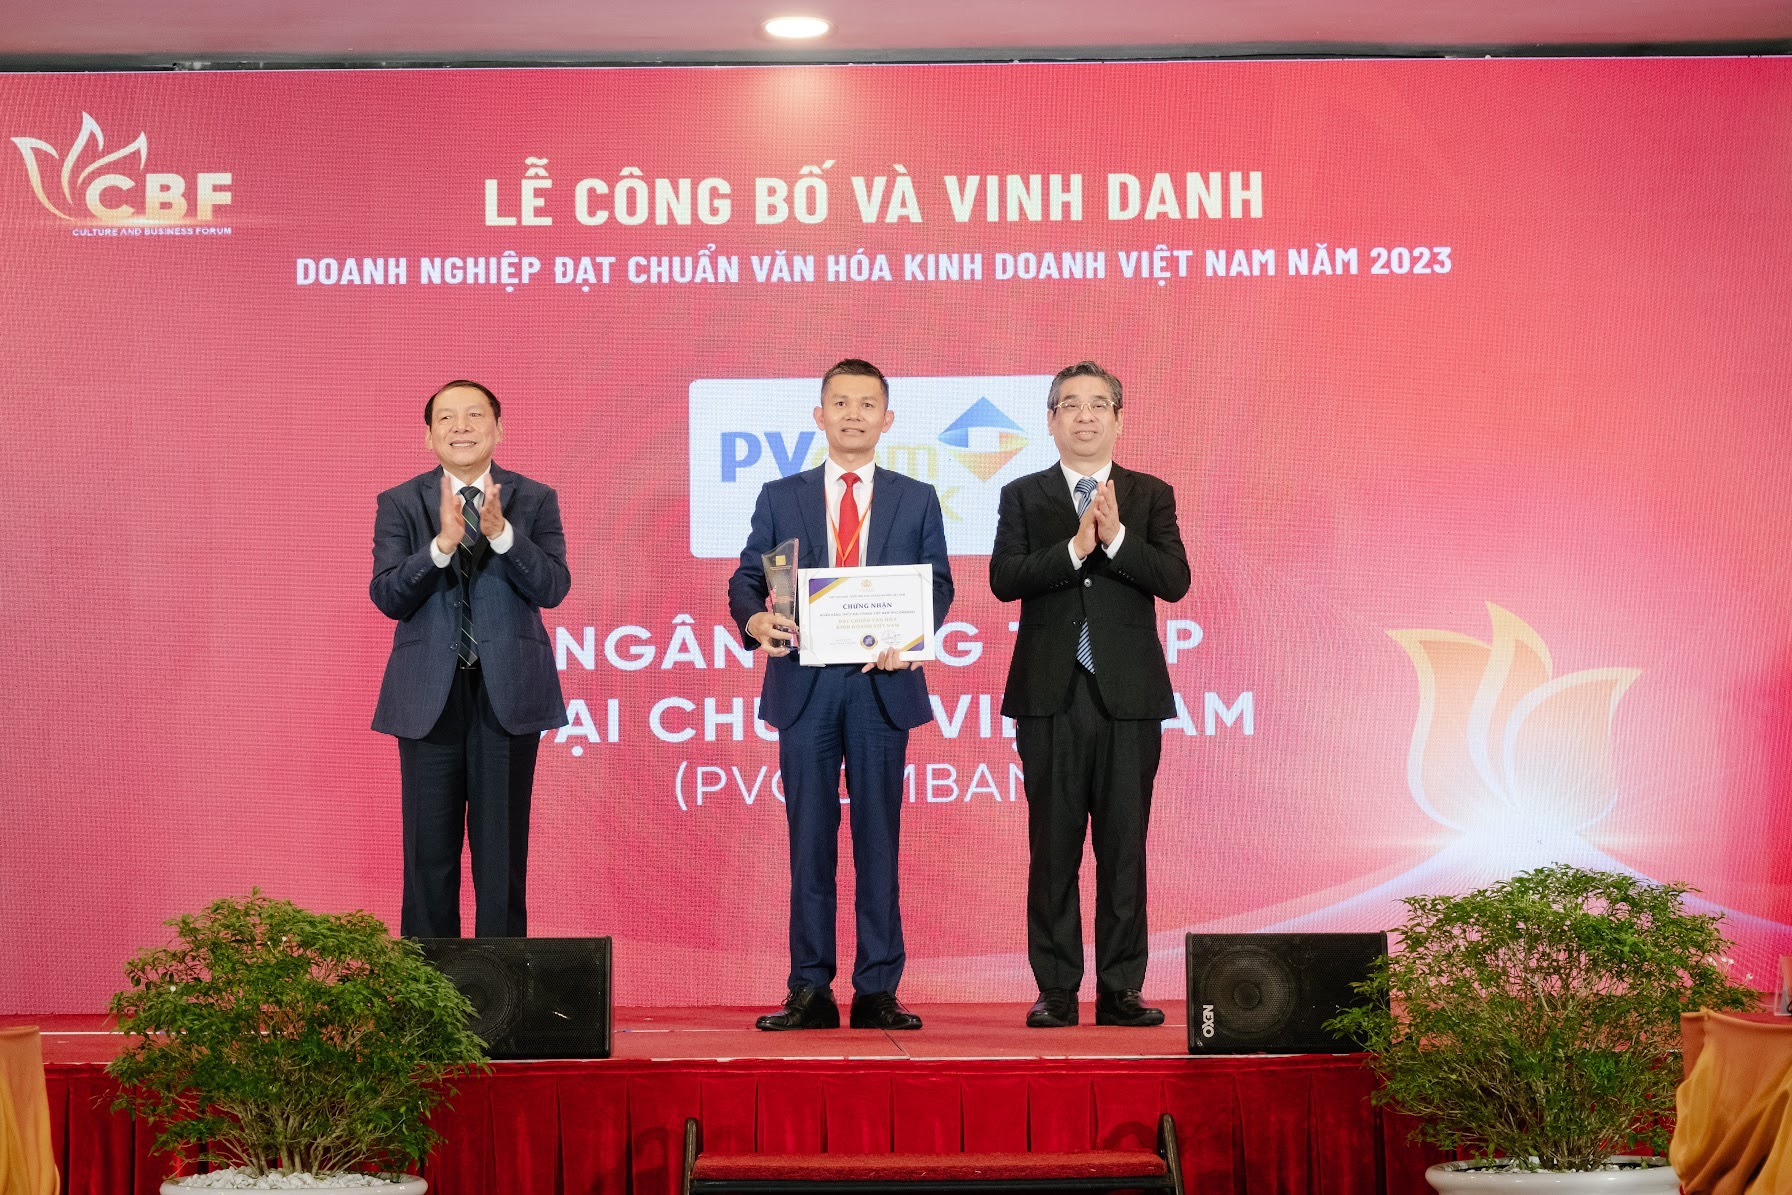 PVcomBank là đơn vị duy nhất trong ngành tài chính ngân hàng được vinh danh là “Doanh nghiệp đạt chuẩn văn hóa kinh doanh Việt Nam” năm 2023